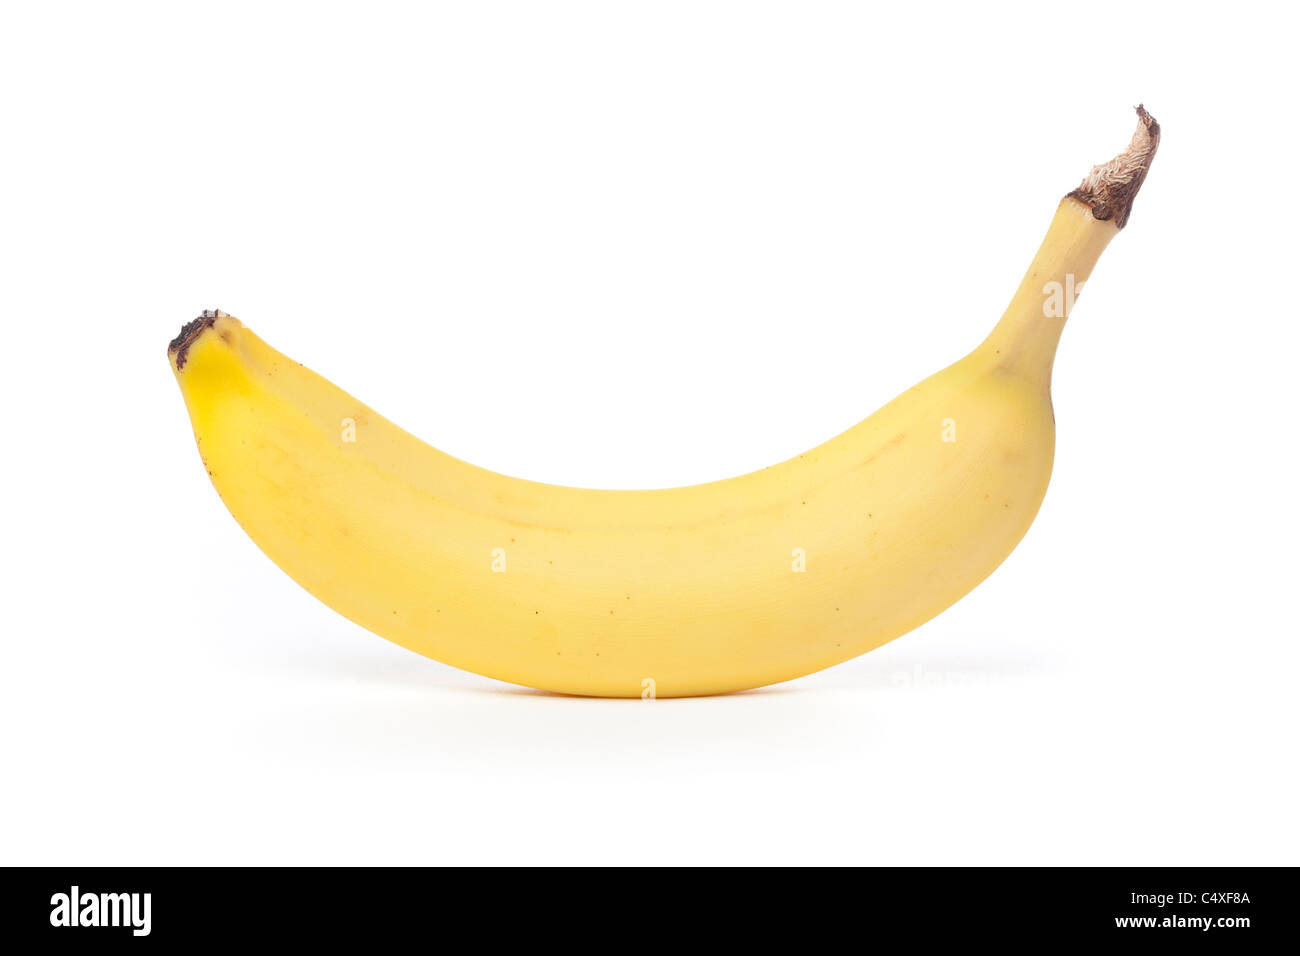 Eine frische gelbe Banane vor einem weißen Hintergrund Stockfoto